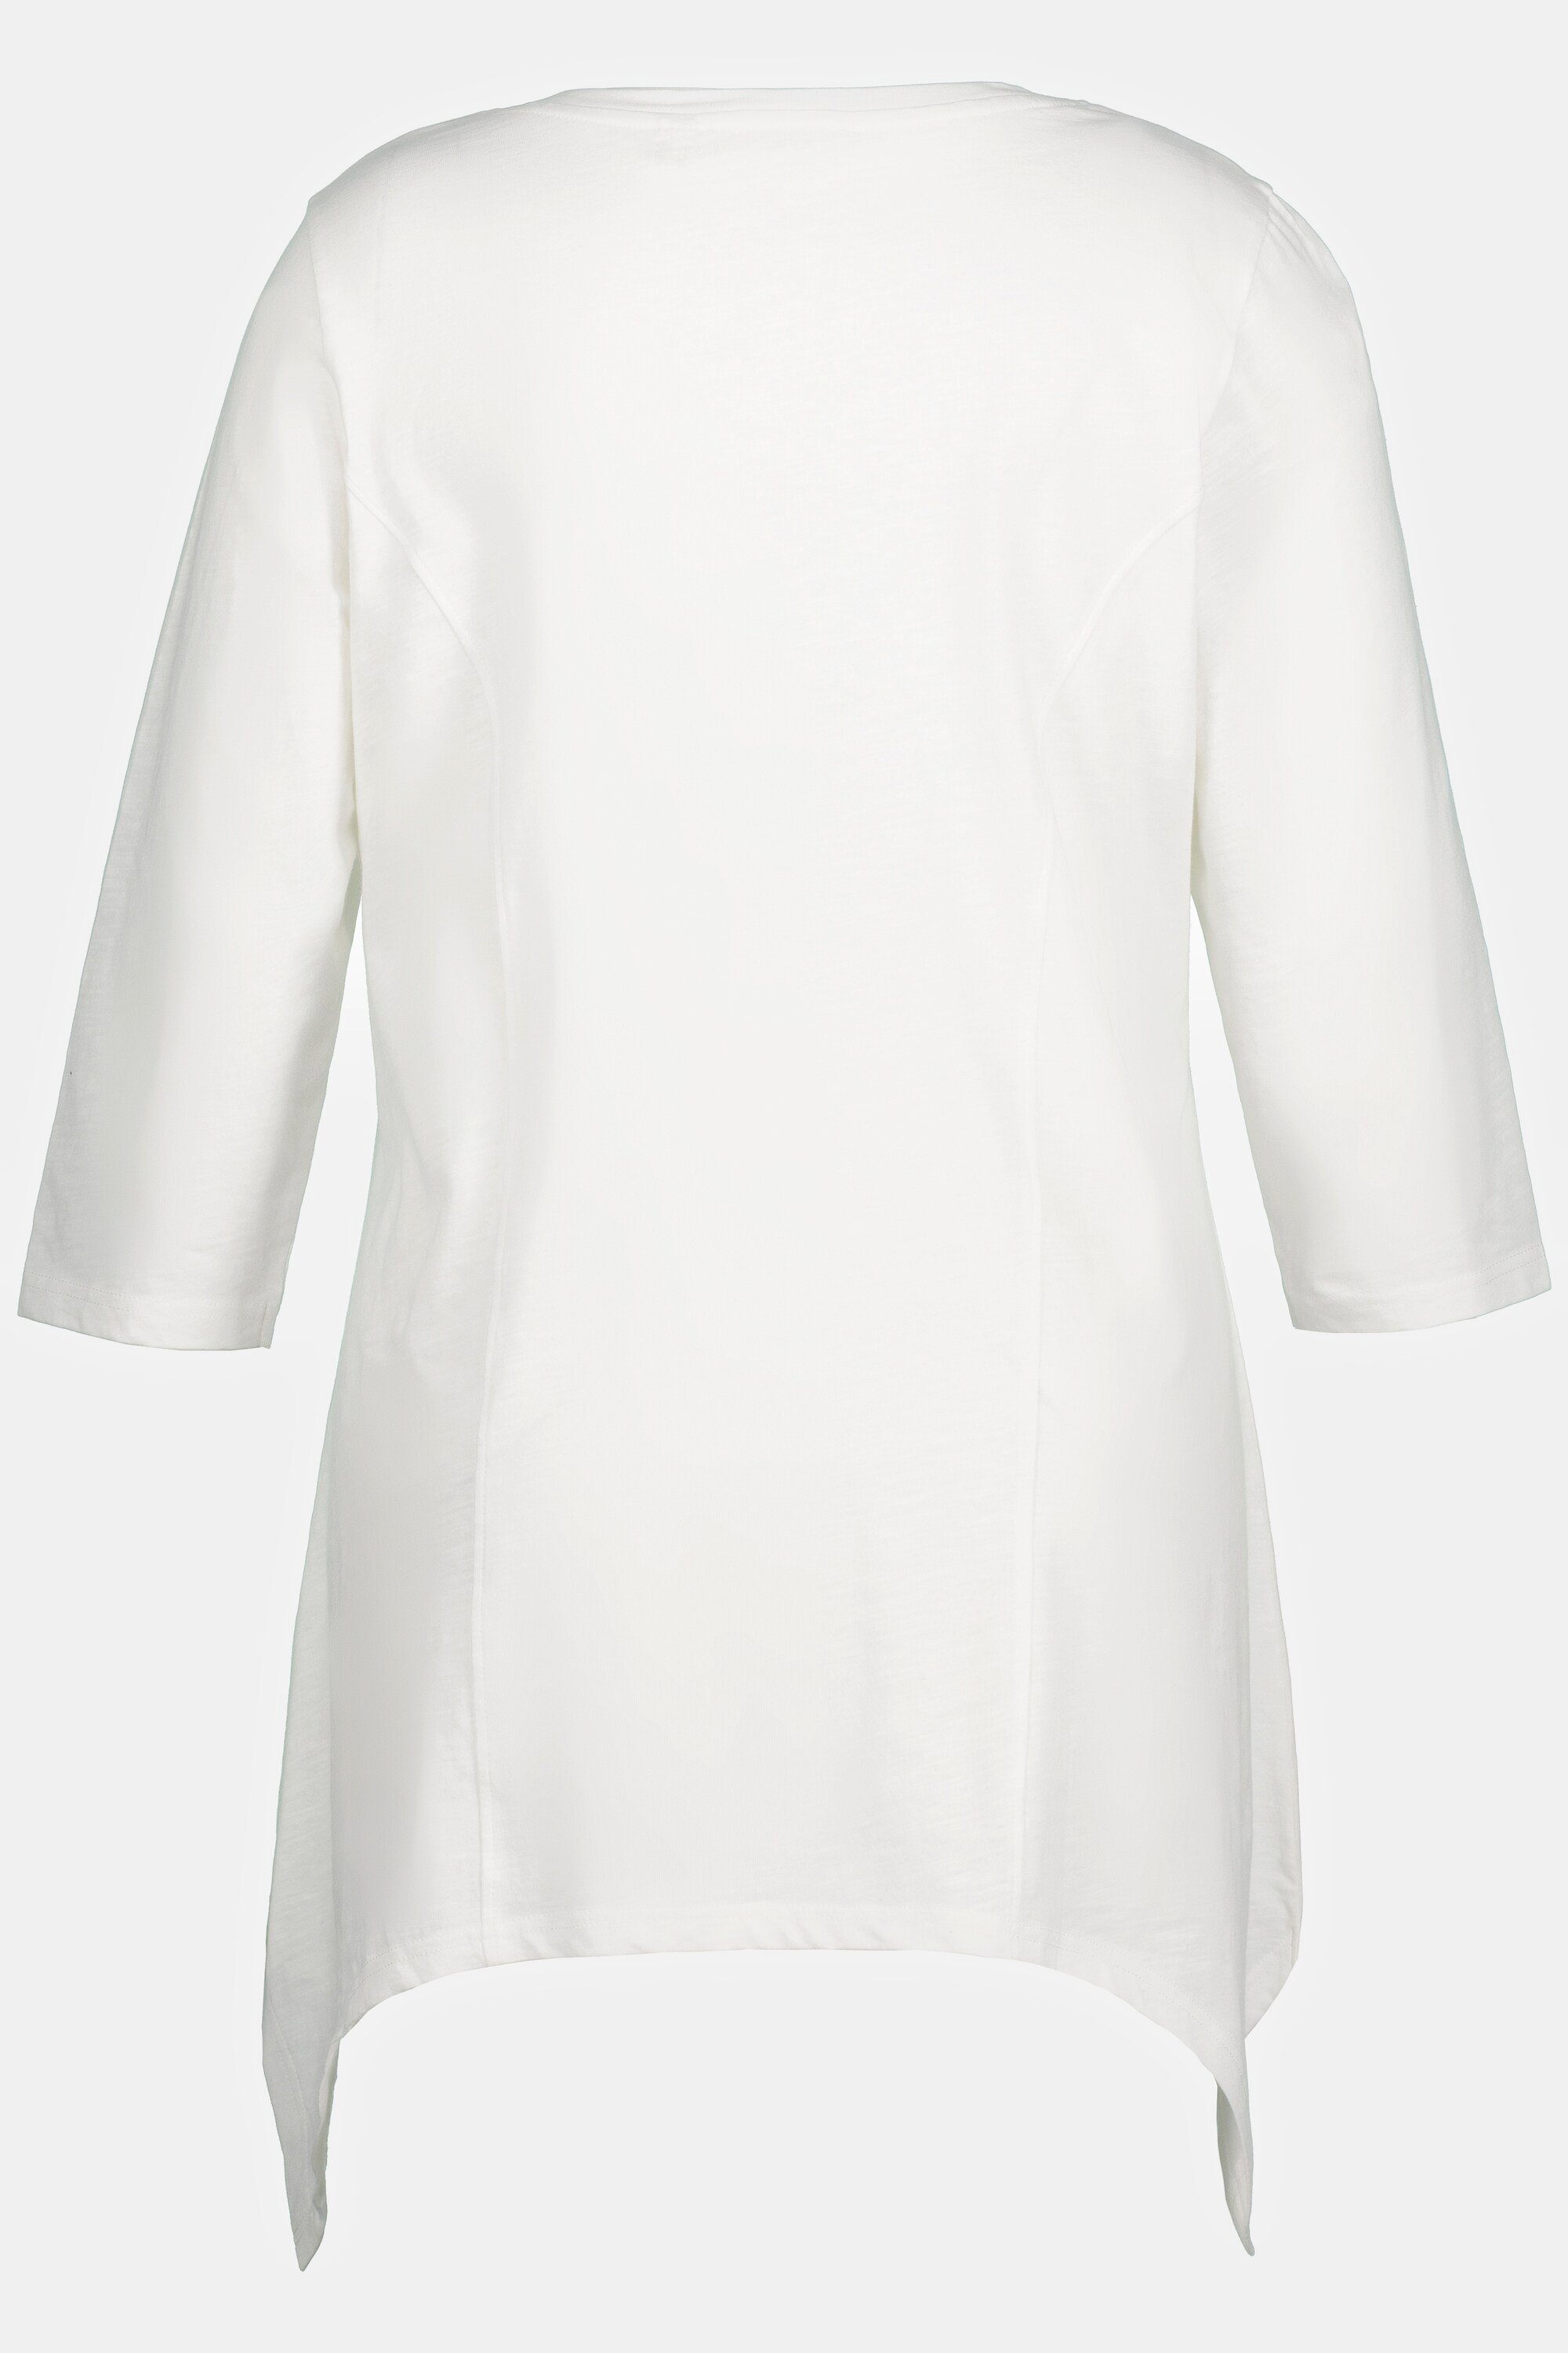 Zipfelsaum offwhite V-Ausschnitt Popken Biobaumwolle Rundhalsshirt Ulla 3/4-Arm Shirt